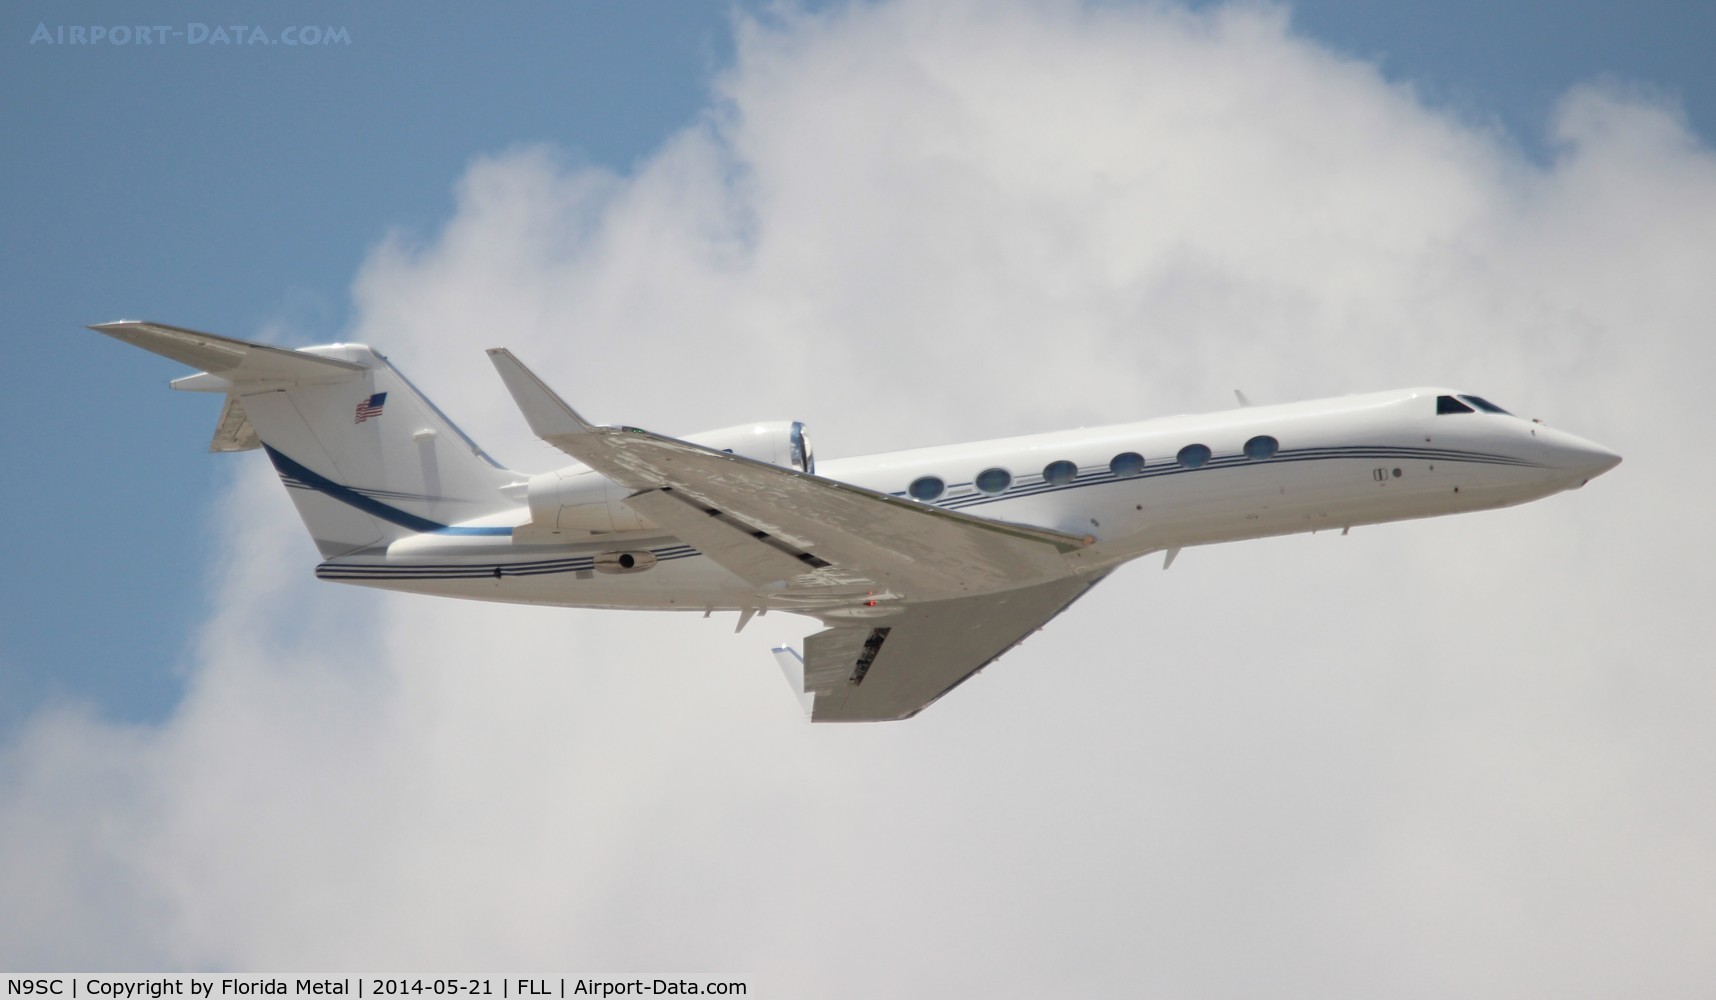 N9SC, 2009 Gulfstream Aerospace GIV-X (G450) C/N 4174, Gulfstream 450